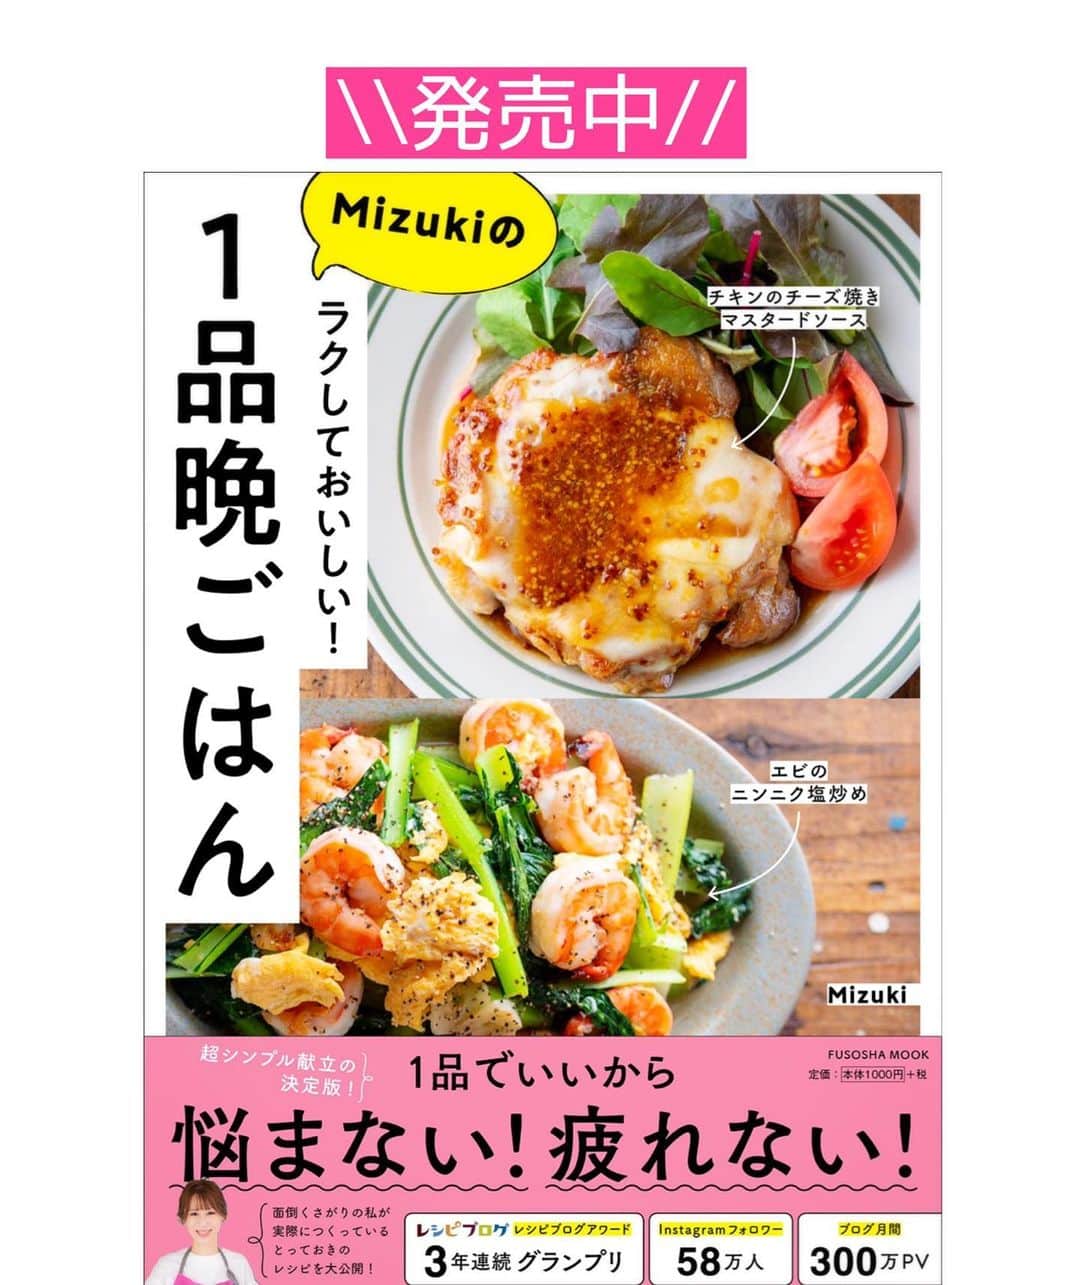 Mizuki【料理ブロガー・簡単レシピ】さんのインスタグラム写真 - (Mizuki【料理ブロガー・簡単レシピ】Instagram)「・﻿ 【#レシピ 】ーーーーーーーー﻿ ♡ひき肉と小松菜の甘辛丼♡﻿ ーーーーーーーーーーーーーー﻿ ﻿ ﻿ ﻿ おはようございます(*^^*)﻿ ﻿ 今日ご紹介させていただくのは﻿ ささっとできるのっけごはん♩﻿ \\ ひき肉と小松菜の甘辛丼 //﻿ ﻿ あっさり和風の甘辛味に﻿ とろ〜りたまごが相性抜群！！﻿ これとっても普通だけれど(笑)﻿ 間違いなく美味しいやつです♡﻿ ﻿ 簡単でコスパもいいので﻿ よかったらお試し下さいね(*´艸`)﻿ ﻿ ﻿ ﻿ ＿＿＿＿＿＿＿＿＿＿＿＿＿＿＿＿＿＿＿＿﻿ 【3人分】﻿ 合いびき肉...150g﻿ 小松菜...1束(200g)﻿ 玉ねぎ...1/4個﻿ サラダ油...小1﻿ 塩こしょう...少々﻿ ●醤油・酒・みりん...各大1.5﻿ ●にんにくチューブ...1cm﻿ ごはん・卵黄...各3人分﻿ ﻿ 1.小松菜は4cm長さに切る。玉ねぎは薄切りにする。●は合わせておく。﻿ 2.フライパンにサラダ油を中火で熱し、ひき肉と玉ねぎを炒める。火が通ったら小松菜も加えて更に炒め、しんなりしたら●を加えて煮からめる。﻿ 3.器にごはんを盛って2をかけ、卵黄をのせる。﻿ ￣￣￣￣￣￣￣￣￣￣￣￣￣￣￣￣￣￣￣￣﻿ ﻿ ﻿ ﻿ ﻿ 《ポイント》﻿ ♦︎豚ひき肉で作っても◎﻿ ♦︎(好みで)仕上げにラー油をかけても美味しいです♩﻿ ♦︎作り置きもOK！冷蔵庫で3日くらい保存できます♩﻿ ﻿ ﻿ ﻿ ﻿ ﻿ ﻿ ﻿ ﻿ 📕新刊発売中📕﻿ 【ラクしておいしい！#1品晩ごはん 】﻿ ￣￣￣￣￣￣￣￣￣￣￣￣￣￣￣￣￣﻿ 私たちだってヘトヘトな日がある•••﻿ 毎日何品も作っていられない•••﻿ もうごはんに悩みたくない😢﻿ そんな時、1品ごはんはいかがでしょう？﻿ というご提案です✨﻿ ﻿ 【1品ごはん】は﻿ 副菜いらずで全てがシンプル！﻿ ￣￣￣￣￣￣￣￣￣￣￣￣￣￣￣￣￣￣﻿ 一品つくるだけでいいから﻿ 献立を考えなくてよし！﻿ ￣￣￣￣￣￣￣￣￣￣￣￣￣￣￣￣￣￣﻿ 悩まない、疲れない、﻿ 気力や時間がなくてもなんとかなる！﻿ ￣￣￣￣￣￣￣￣￣￣￣￣￣￣￣￣￣￣﻿ そんな頼りになる﻿ 便利なお助けごはんです☺️💕﻿ (ハイライトに🔗貼っています✨)﻿ ￣￣￣￣￣￣￣￣￣￣￣￣￣￣￣￣￣﻿ ﻿ ﻿ ﻿ ﻿ ﻿ ⭐️発売中⭐️﻿ ＿＿＿＿＿＿＿＿＿＿＿＿＿＿＿＿＿＿﻿ しんどくない献立、考えました♩﻿ \15分でいただきます/﻿ 📕#Mizukiの2品献立 📕﻿ ﻿ 和食をもっとカジュアルに♩﻿ \毎日のごはんがラクになる/﻿ 📘#Mizukiの今どき和食 📘﻿ ﻿ ホケミレシピの決定版♩﻿ \はじめてでも失敗しない/﻿ 📙#ホットケーキミックスのお菓子 📙﻿ ﻿ NHKまる得マガジンテキスト☆﻿ ホットケーキミックスで﻿ 📗絶品おやつ&意外なランチ📗﻿ ￣￣￣￣￣￣￣￣￣￣￣￣￣￣￣￣￣￣﻿ ﻿ ﻿ ﻿ ＿＿＿＿＿＿＿＿＿＿＿＿＿＿＿＿＿＿﻿ レシピを作って下さった際や﻿ レシピ本についてのご投稿には﻿ タグ付け( @mizuki_31cafe )して﻿ お知らせいただけると嬉しいです😊💕﻿ ￣￣￣￣￣￣￣￣￣￣￣￣￣￣￣￣￣￣﻿ ﻿ ﻿ ﻿ ﻿ #ひき肉#小松菜#丼#Mizuki#簡単レシピ#時短レシピ#節約レシピ#料理#フーディーテーブル#マカロニメイト#おうちごはん#デリスタグラマー#料理好きな人と繋がりたい#おうちごはんlover#写真好きな人と繋がりたい#foodpic#cooking#recipe#lin_stagrammer#foodporn#yummy#f52grams#ひき肉と小松菜の甘辛丼m」1月7日 7時12分 - mizuki_31cafe